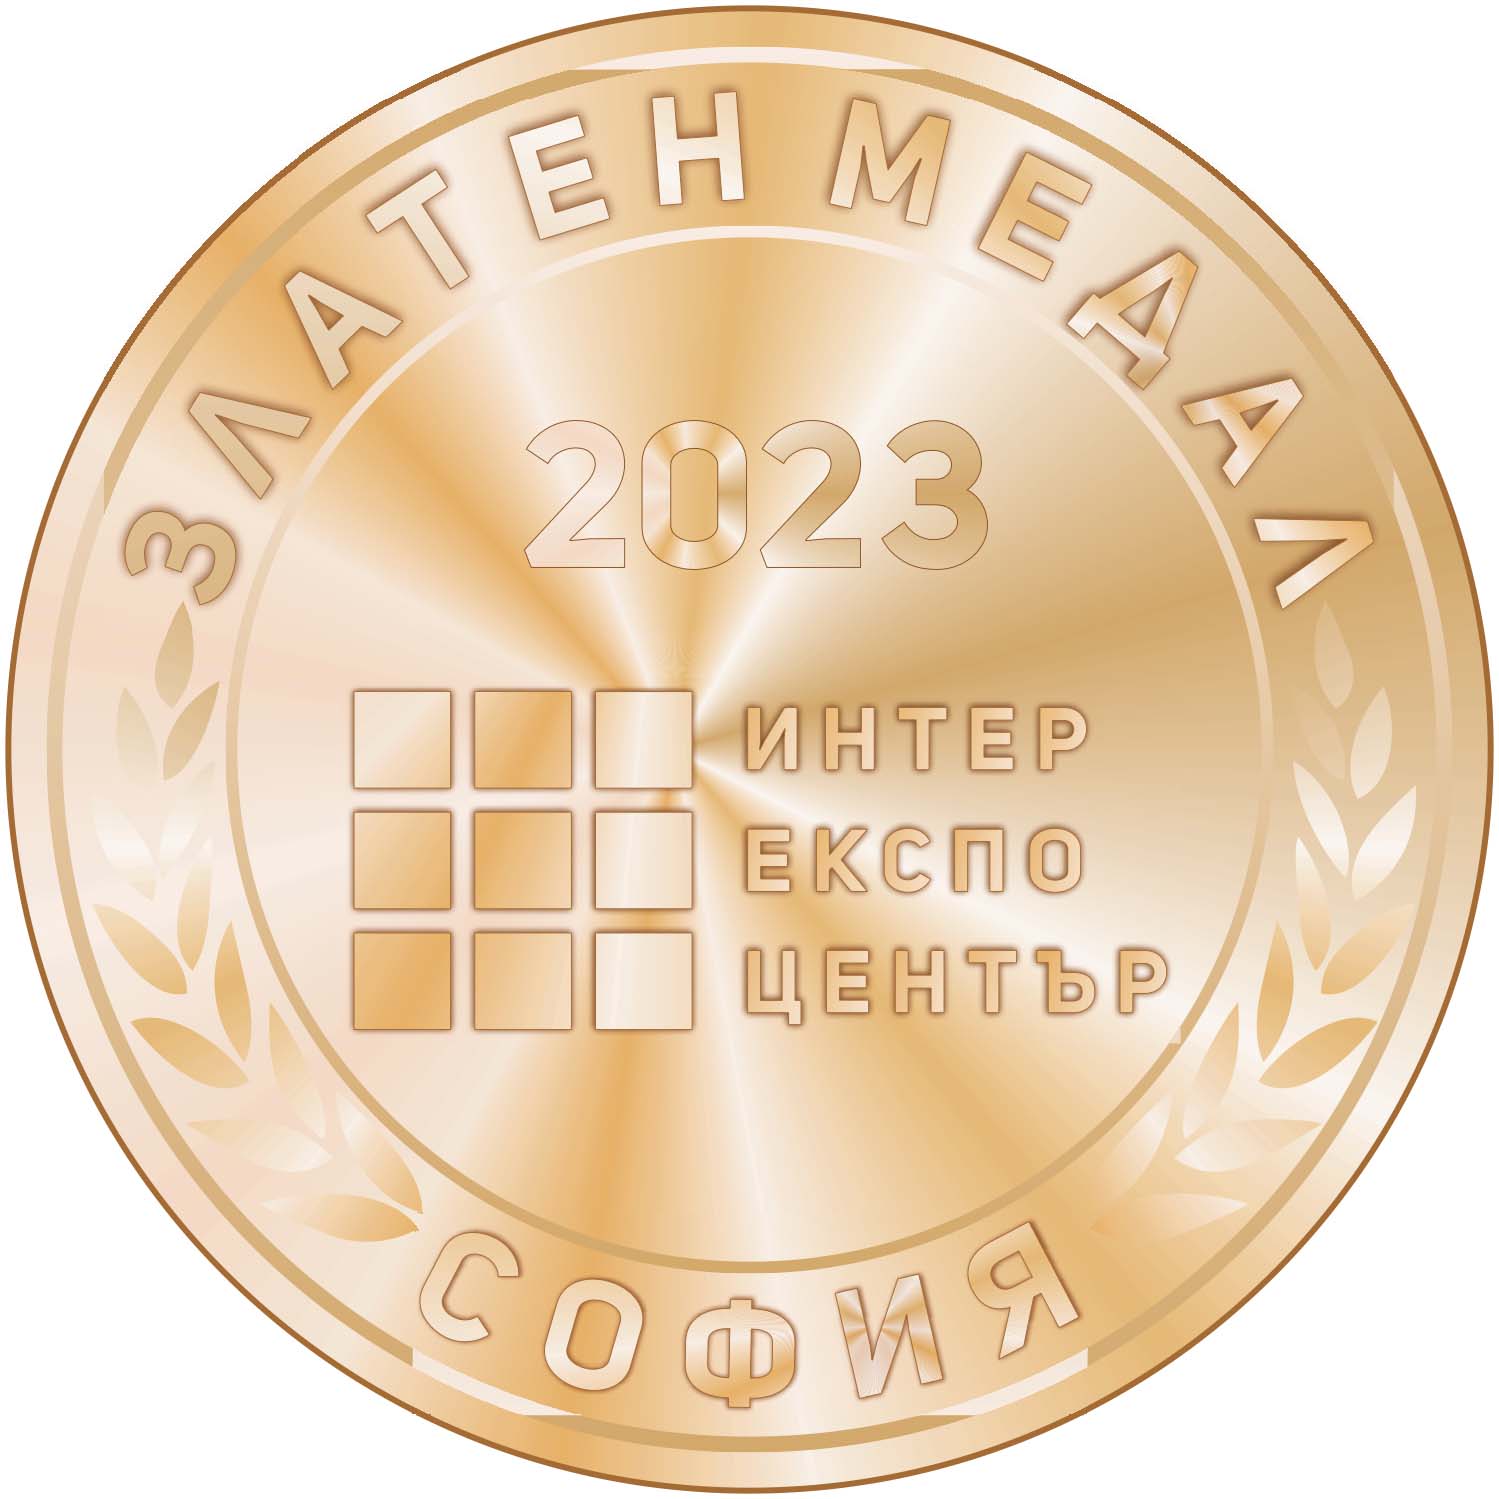 Златен медал на Месомания 2023